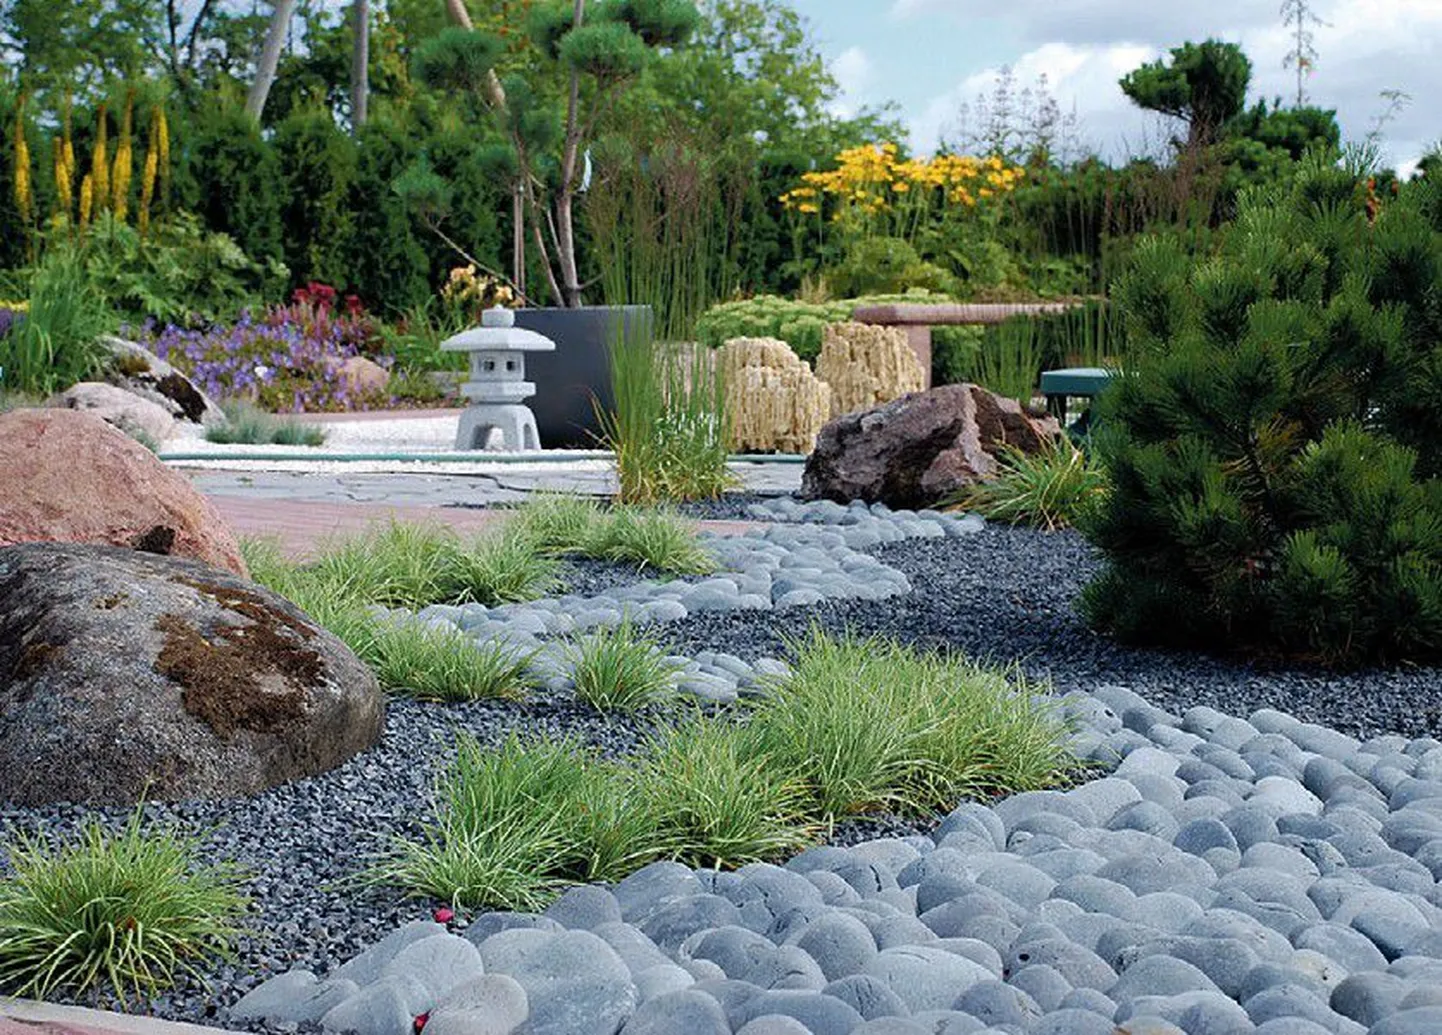 Jaapani aed pakub harmooniat, rahulikku ja väljapeetud vormi.